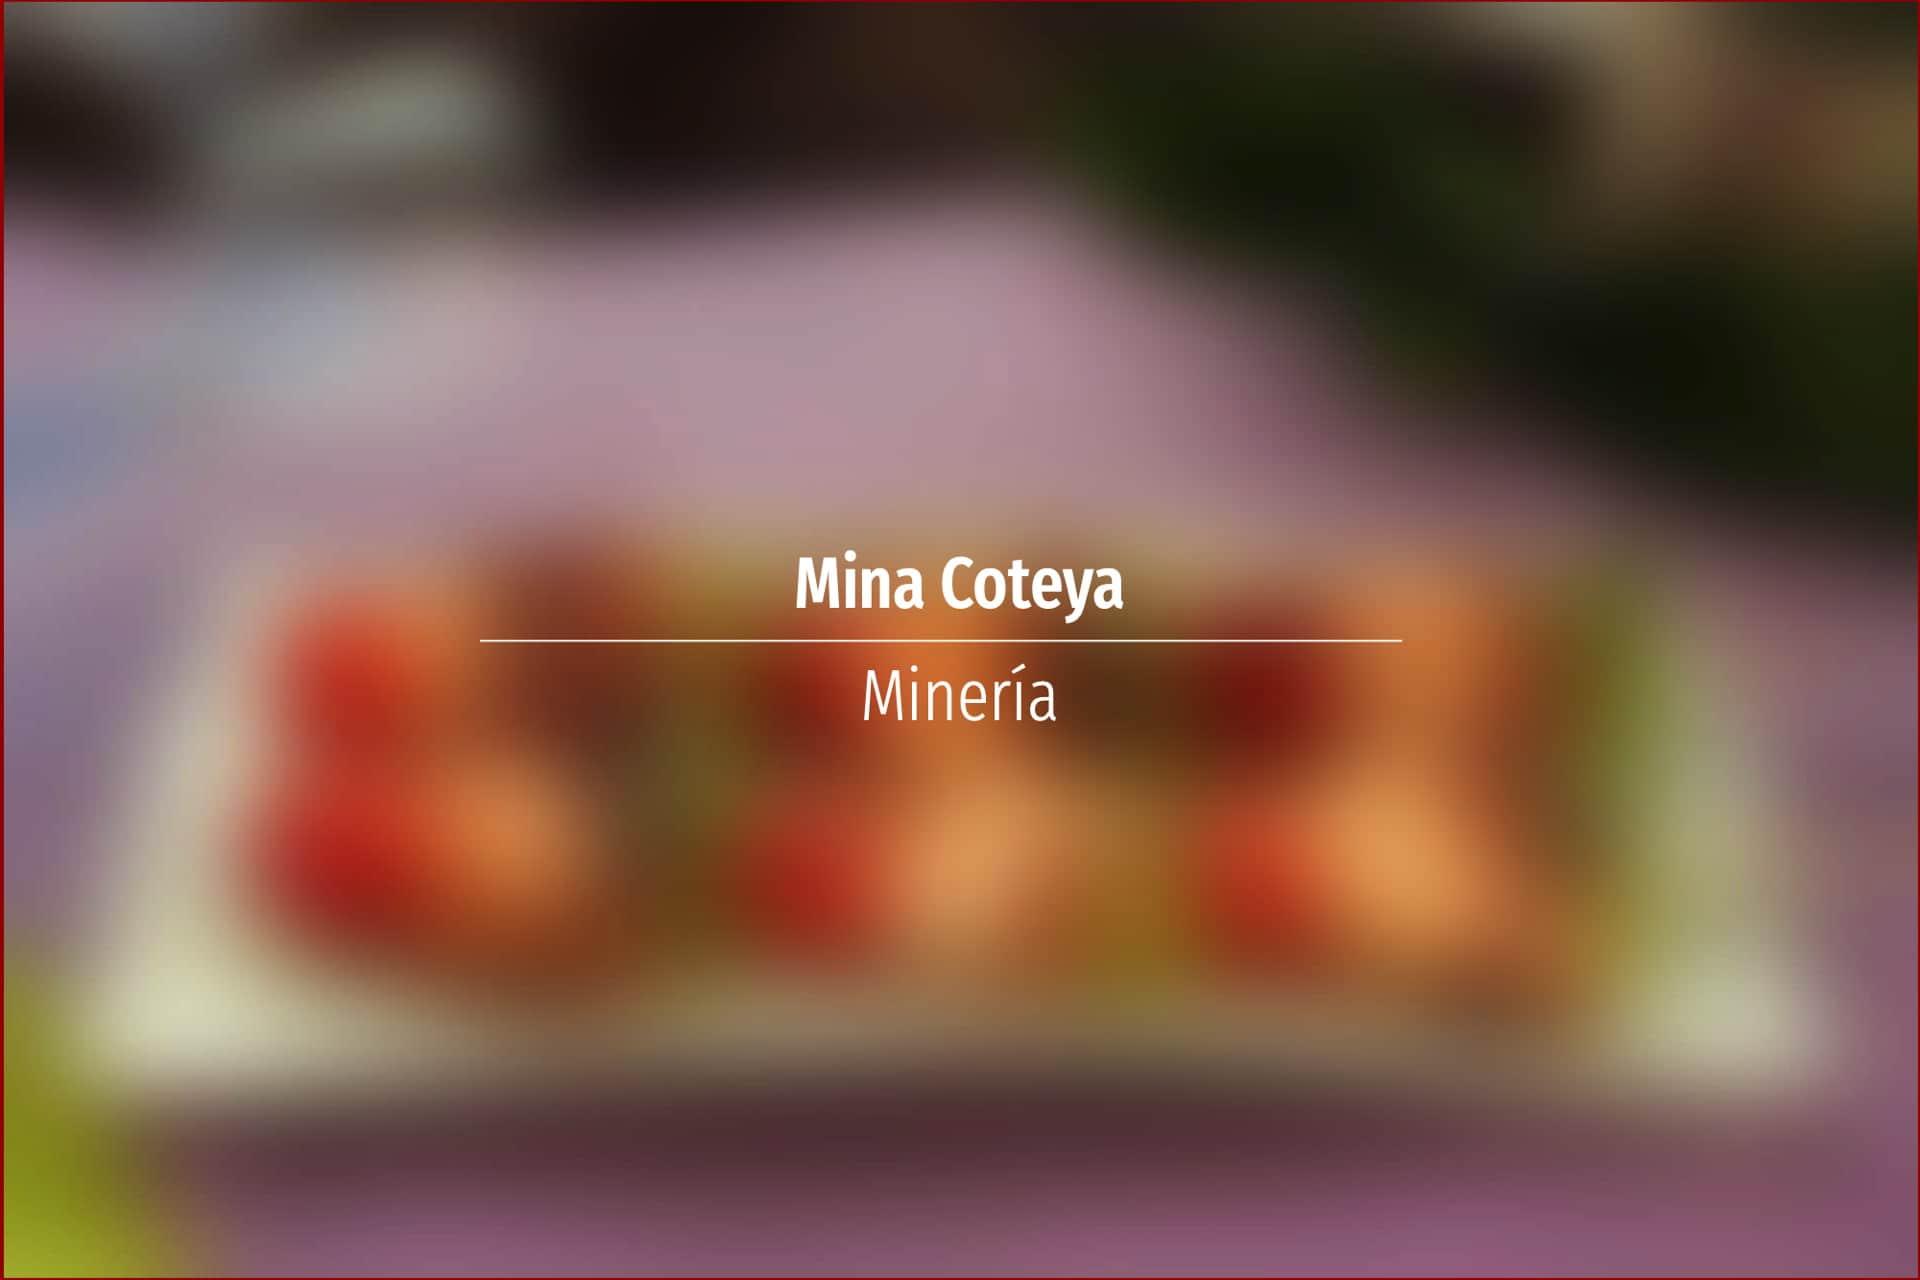 Mina Coteya